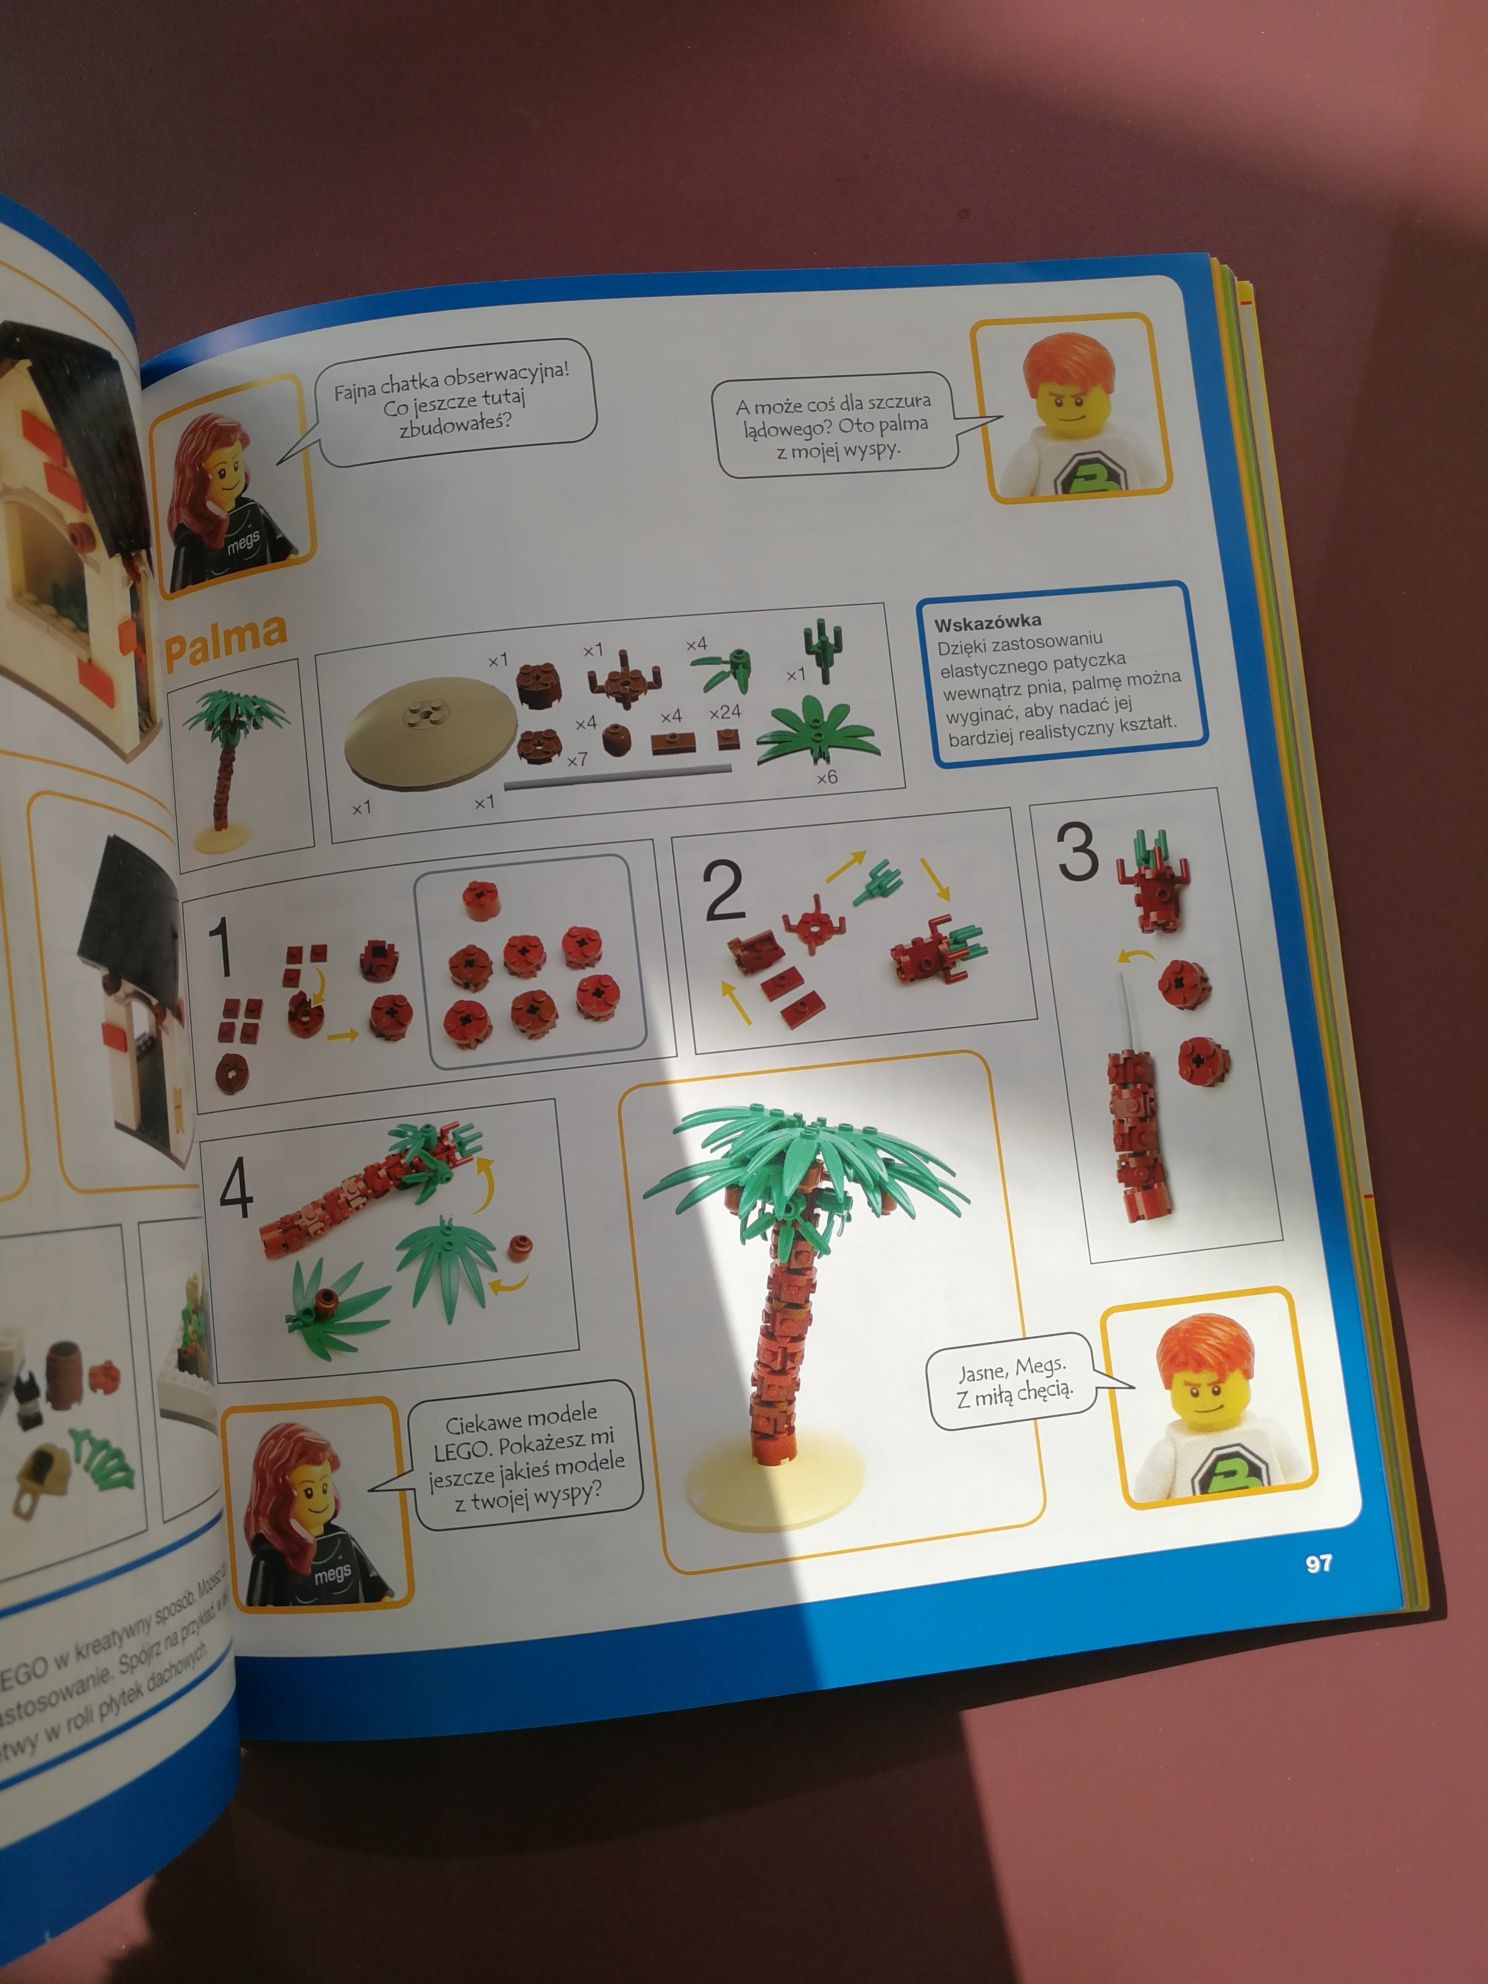 LEGO Księga przygód. Kosmiczne podróże, piraci, smoki i jeszcze więcej